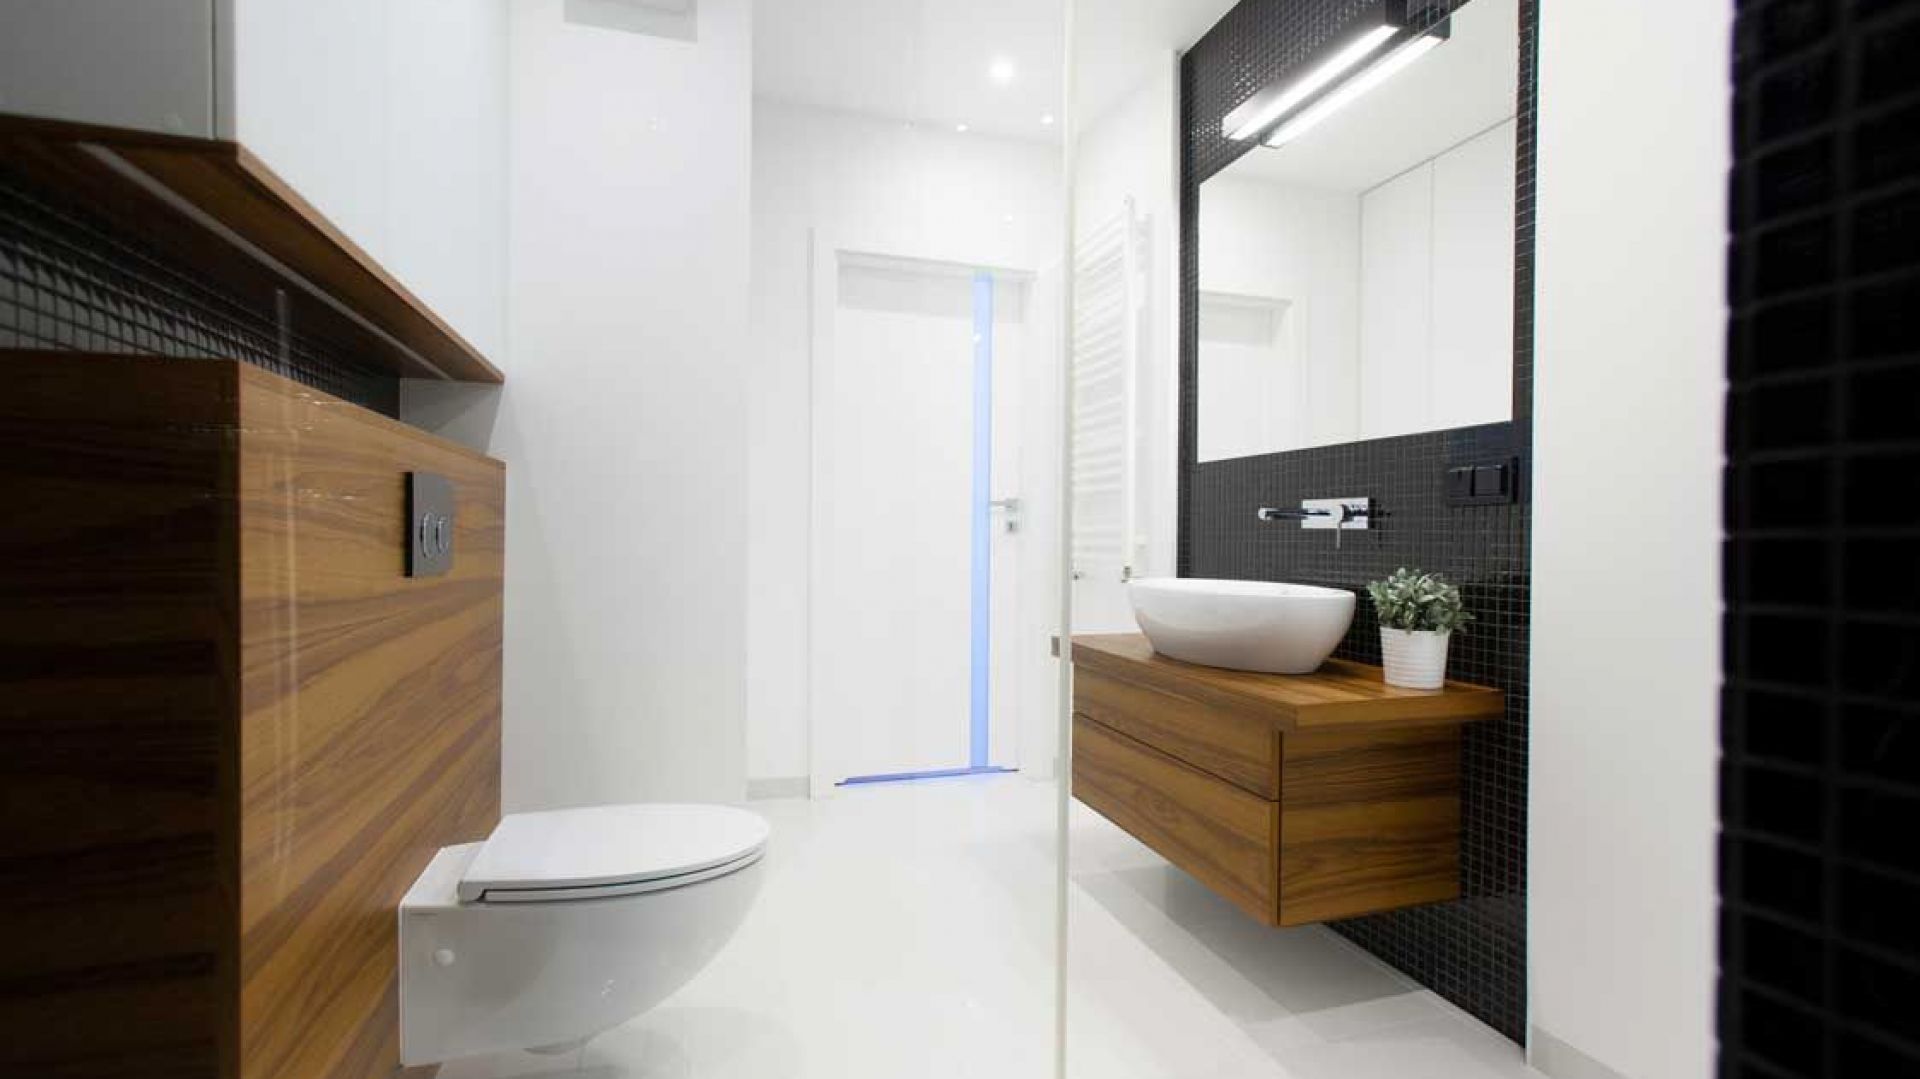 Architekt radzi: jak dobrze oświetlić łazienkę?